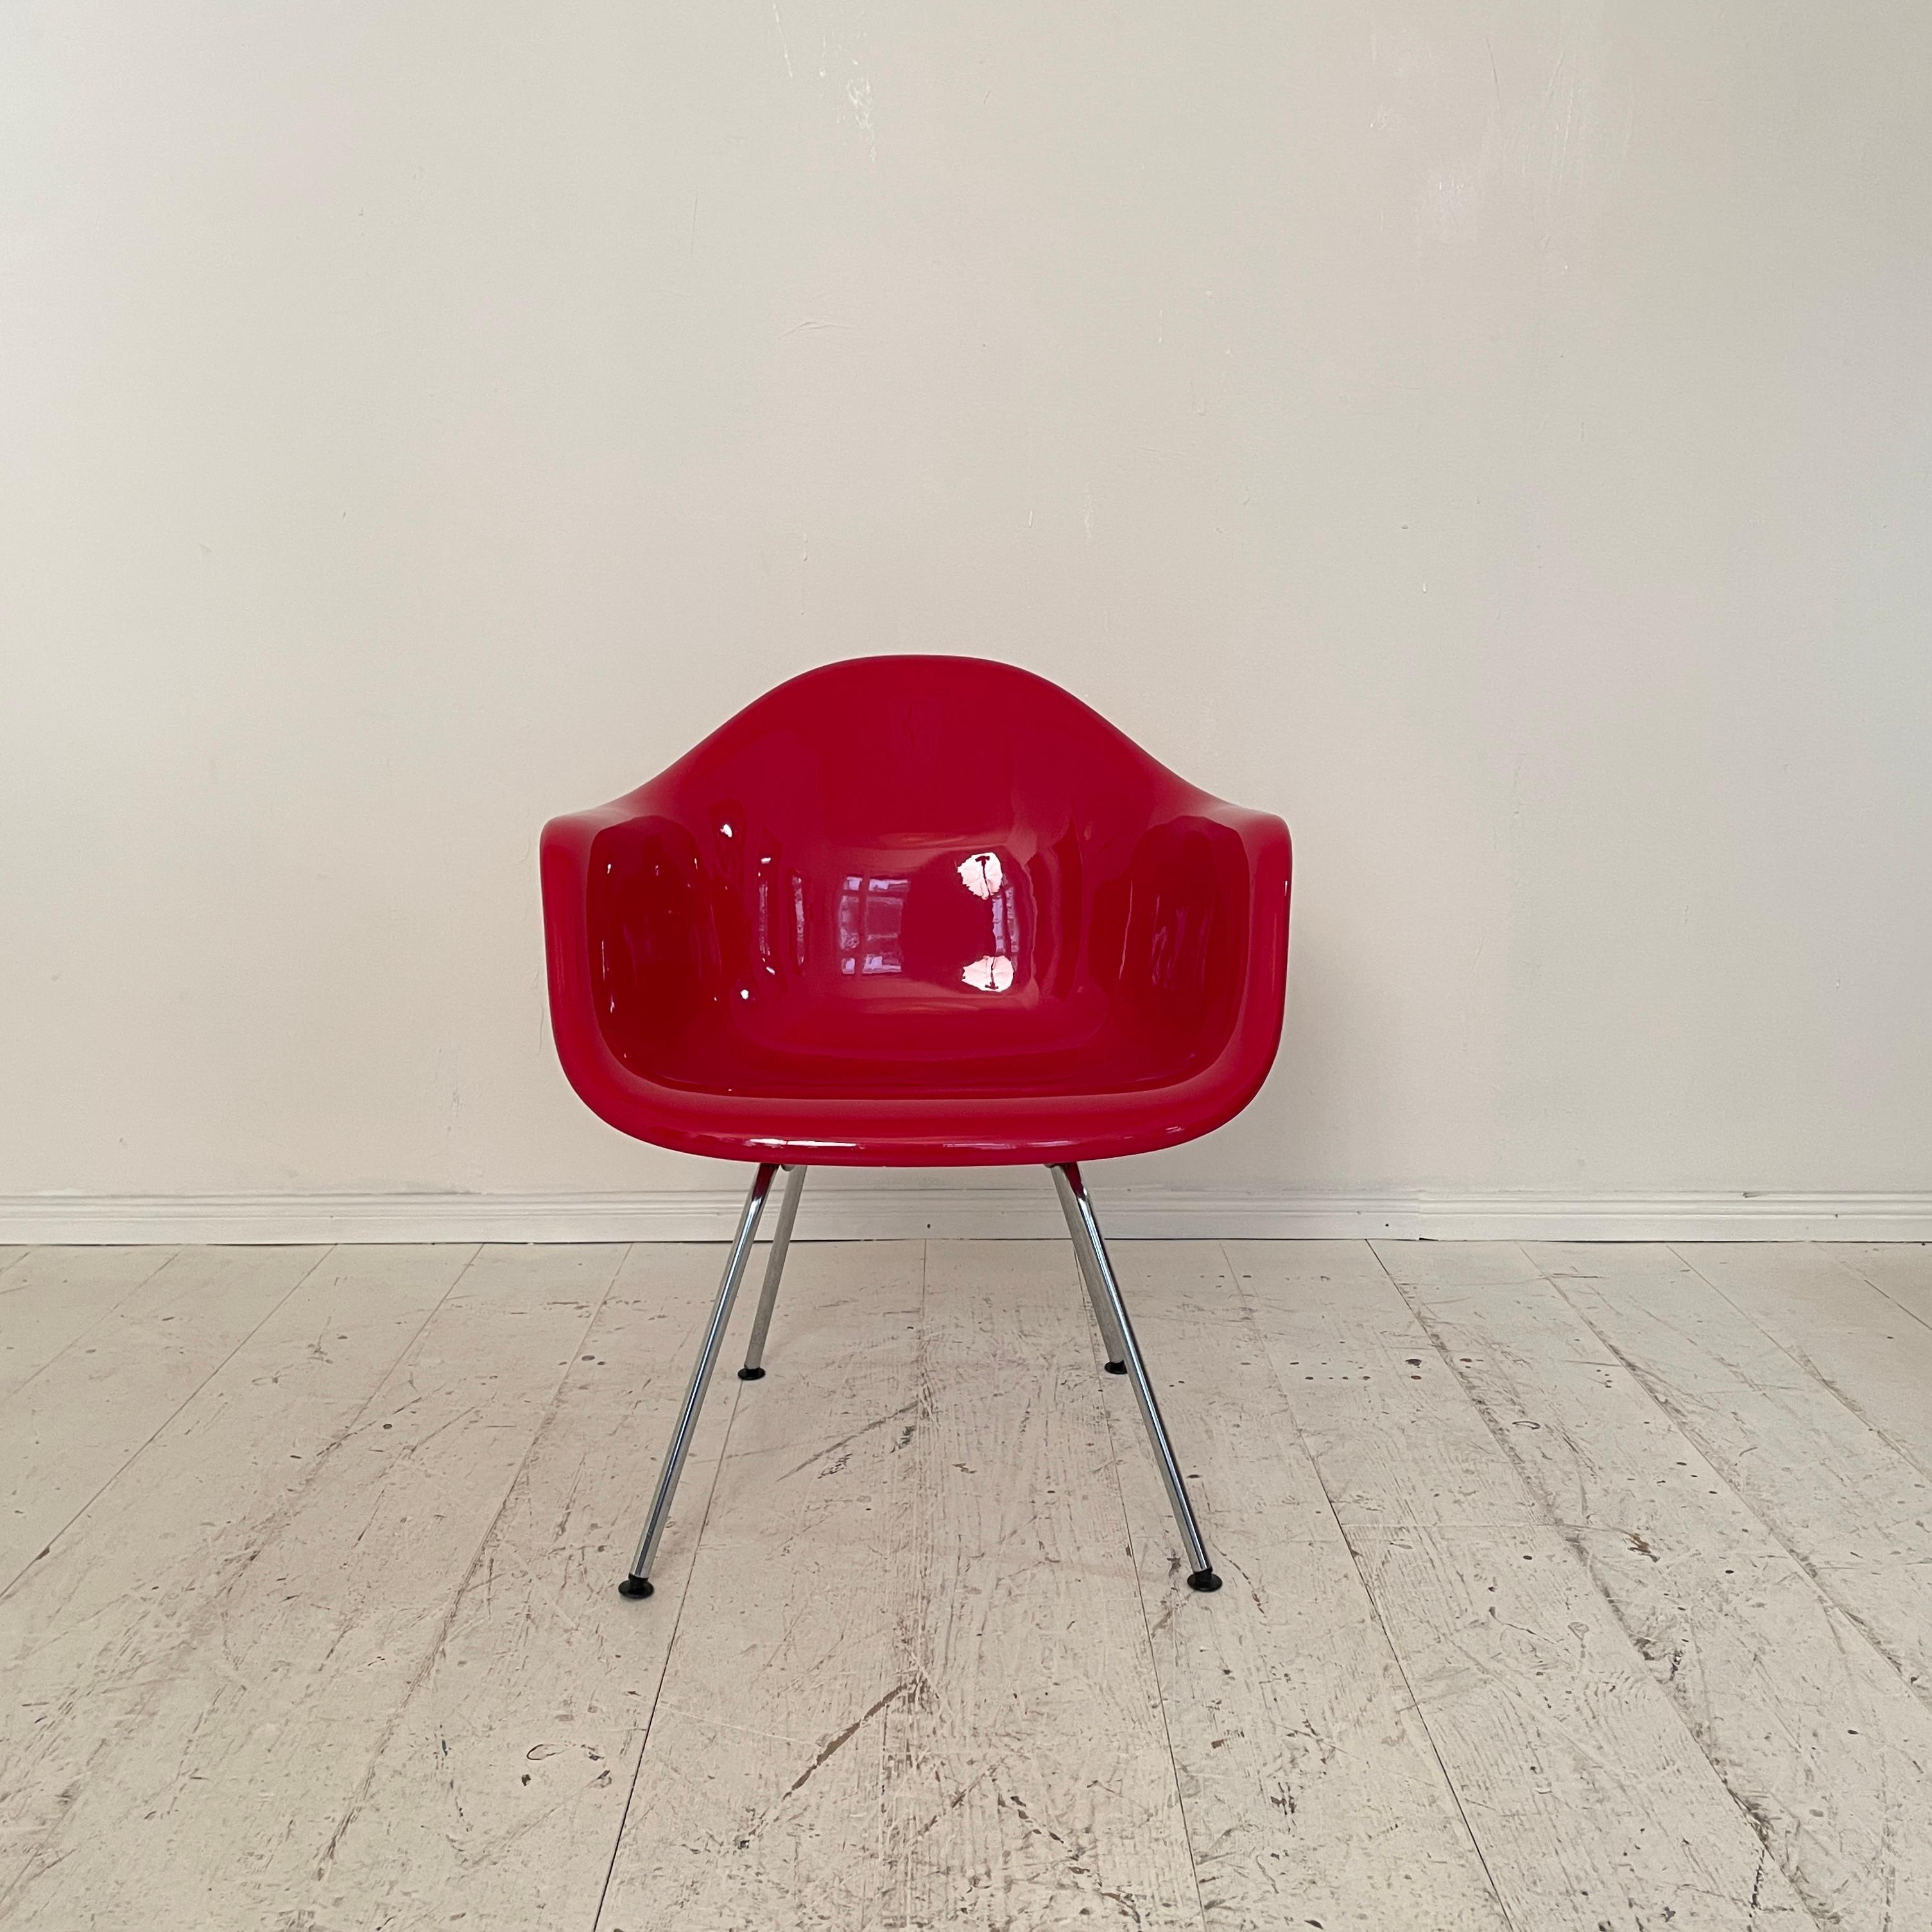 Magnifique et rare chaise longue Dax avec piètement en H. 
Cette version est un peu plus basse que les autres modèles.
Seulement 42 cm de haut au lieu de 45 cm. 
La coque en fibre de verre est recouverte d'un revêtement en poudre d'un beau rouge. La